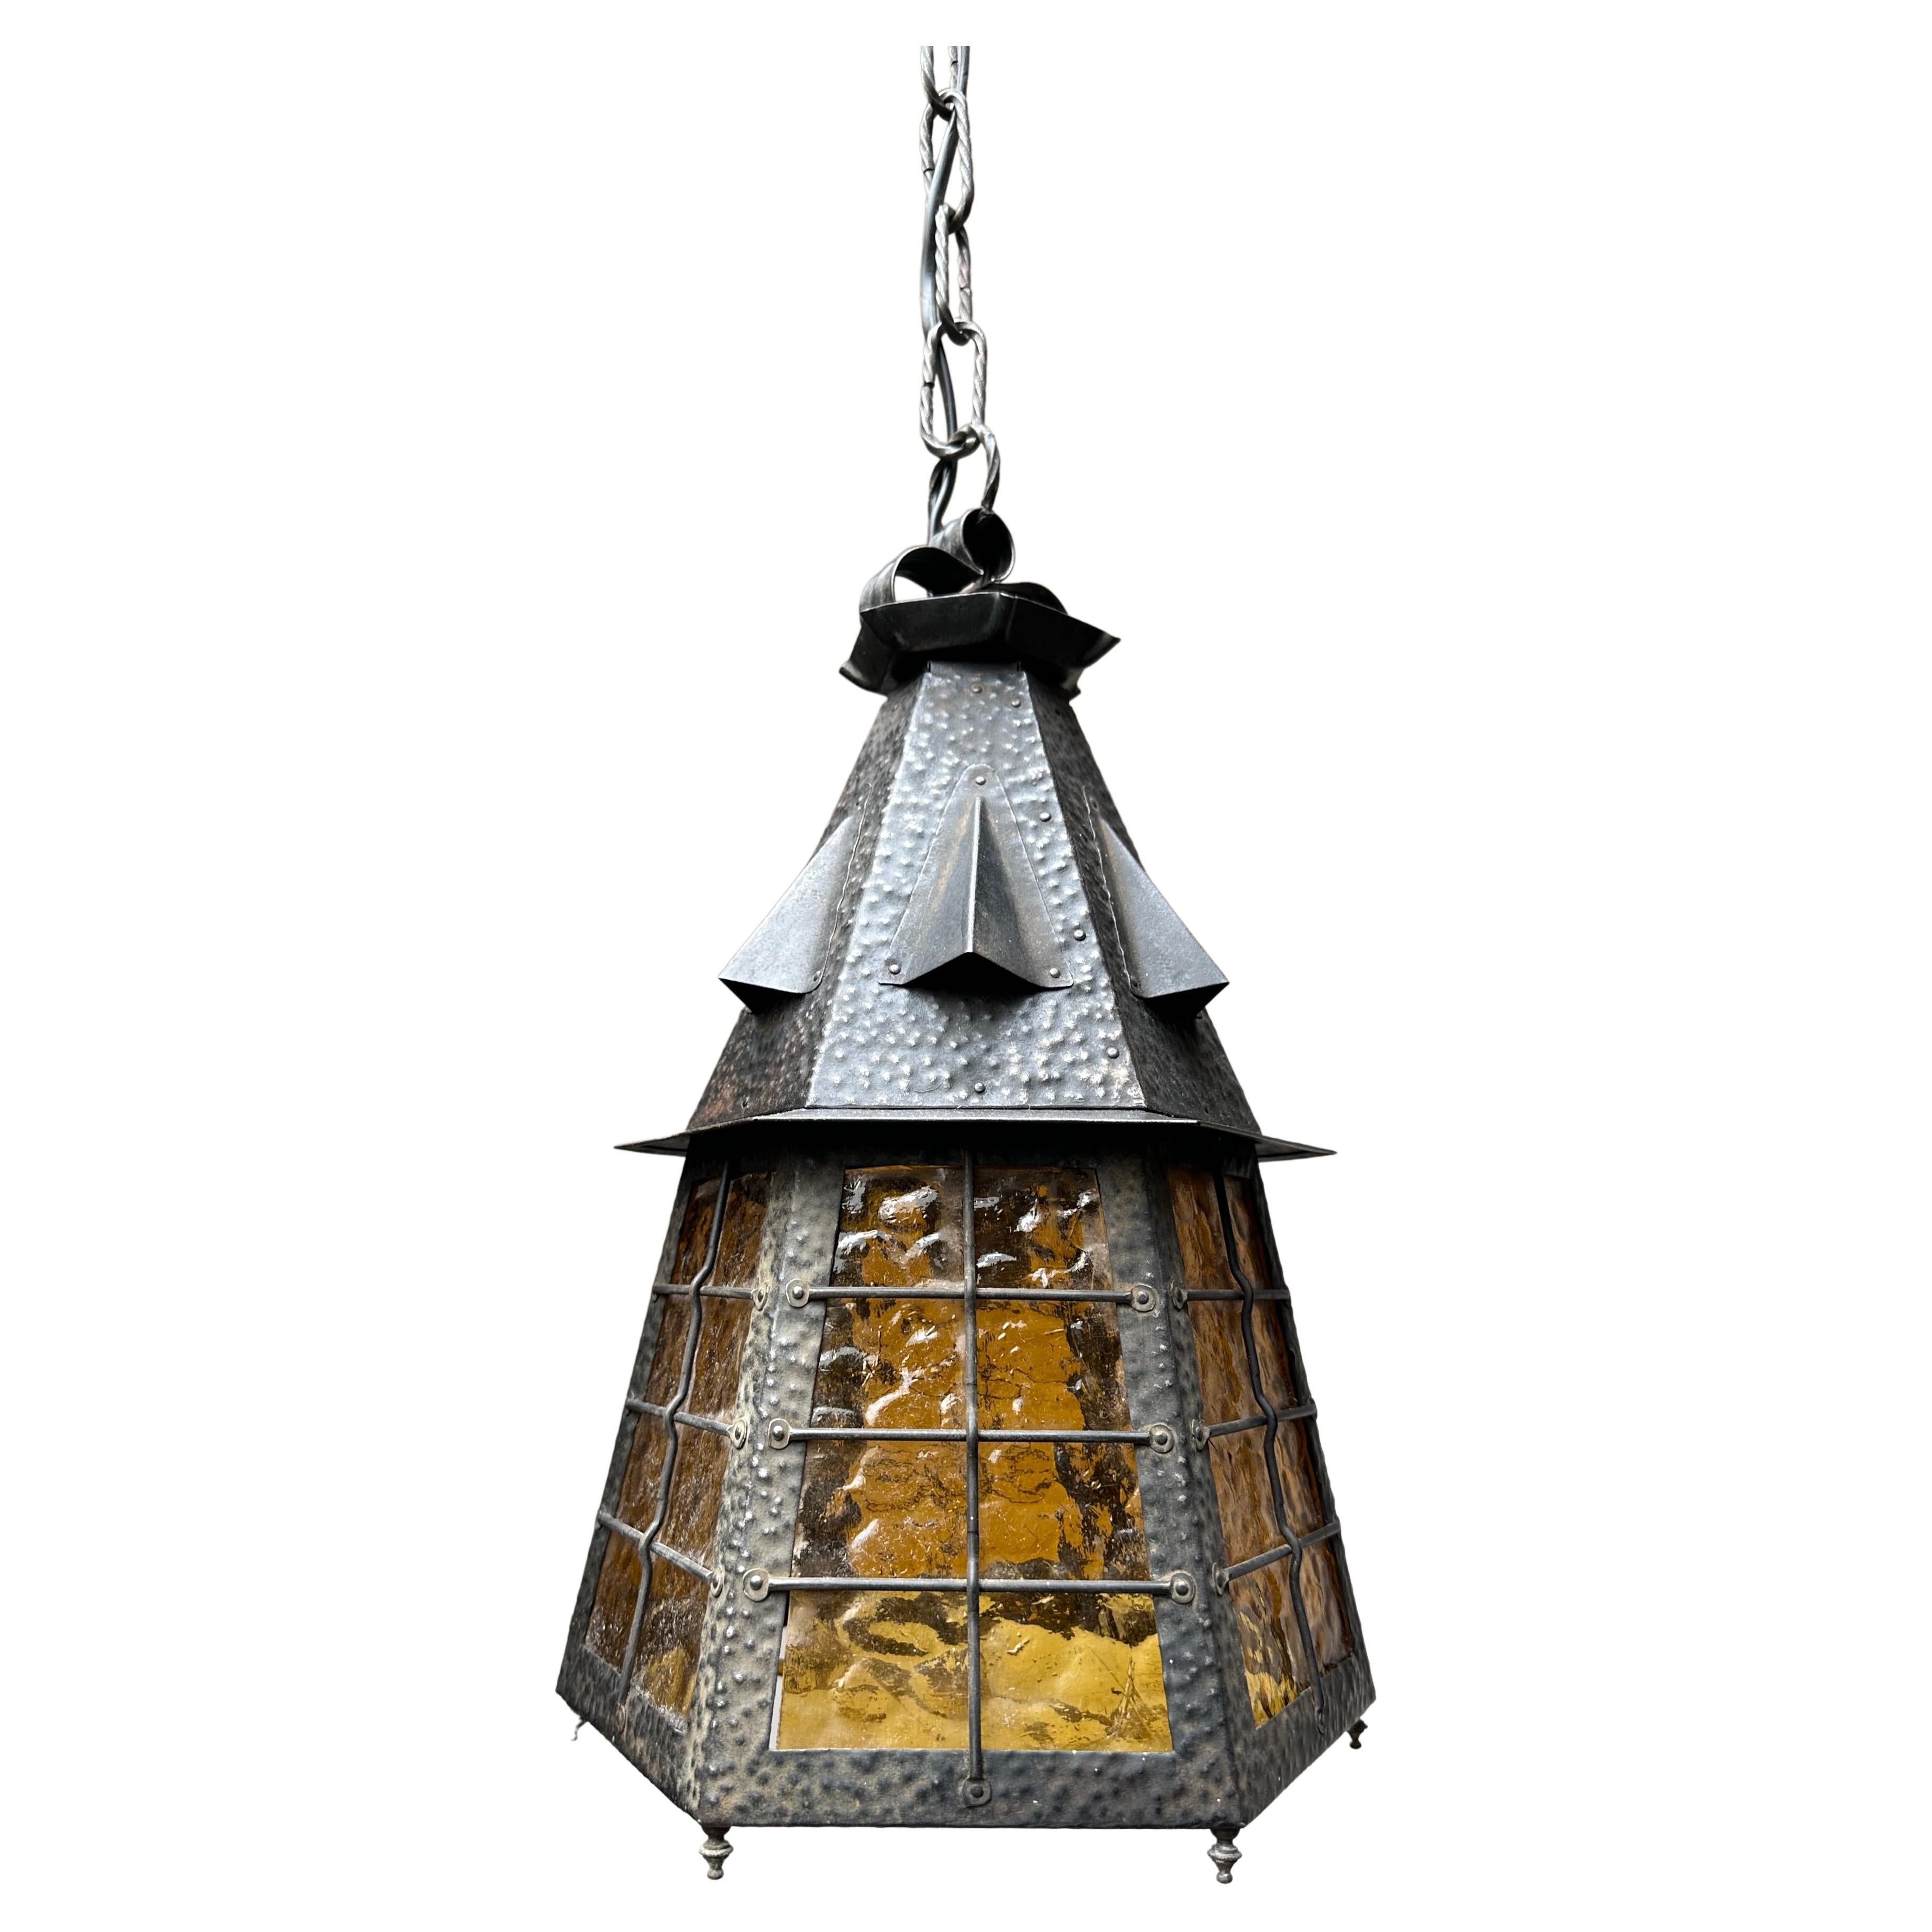 Lampe suspendue Arts & Crafts en fer forgé avec lanterne en verre de cathédrale